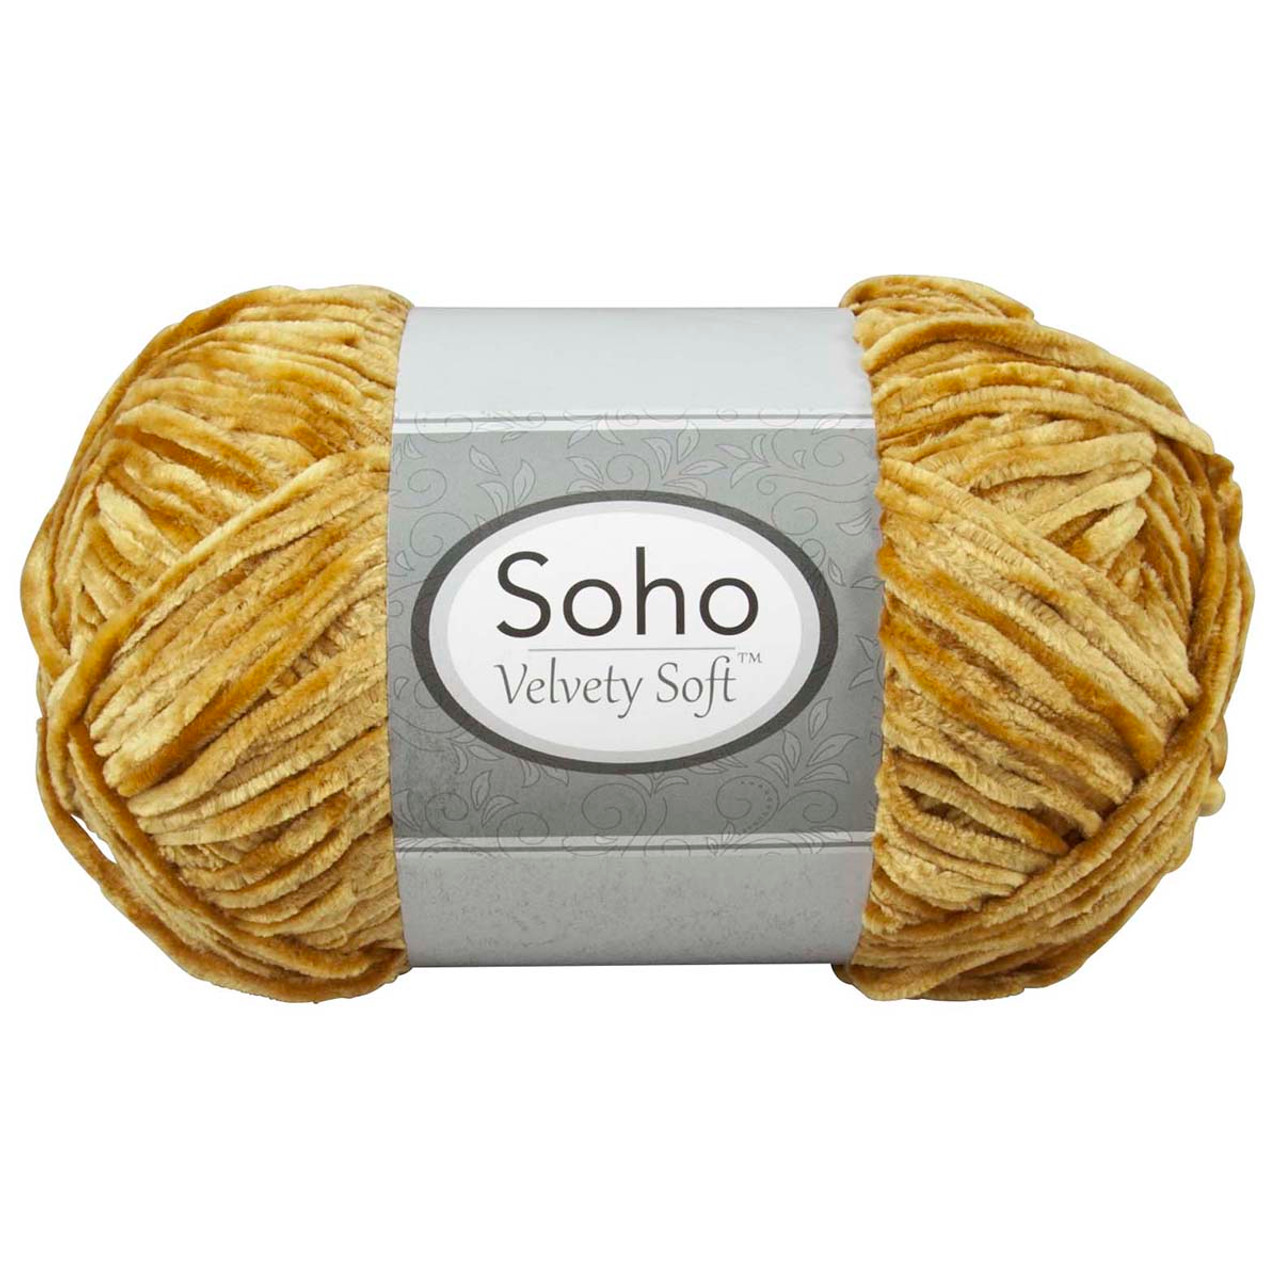 Soho Velvety Soft Yarn